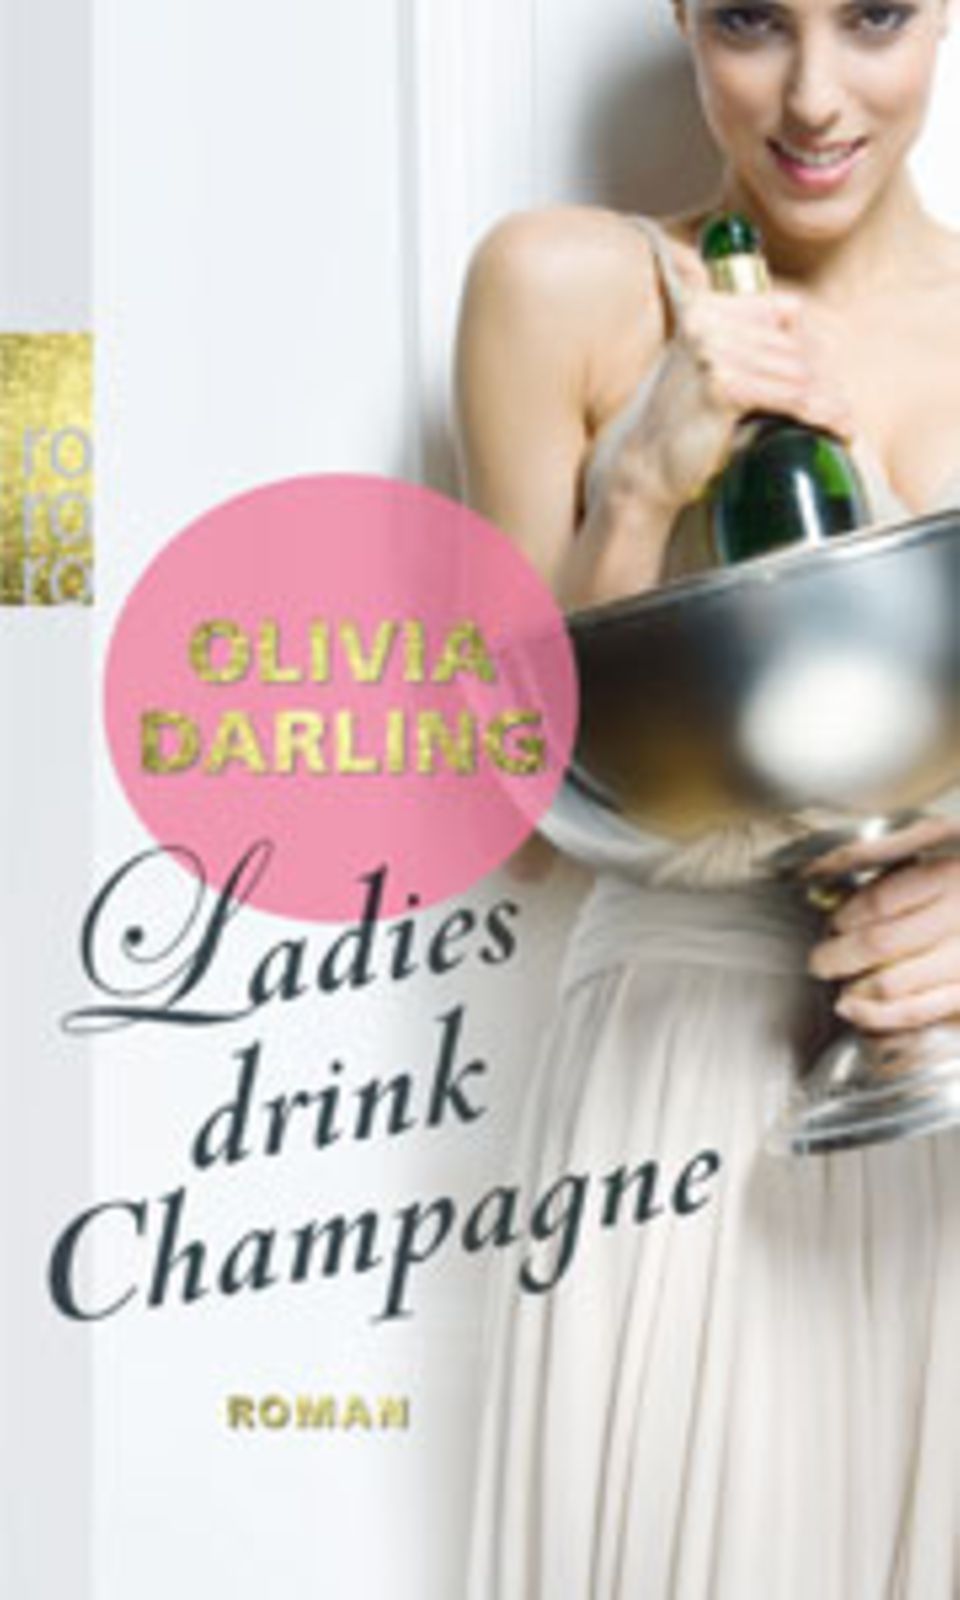 Olivia Darling: Ladies drink Champagne